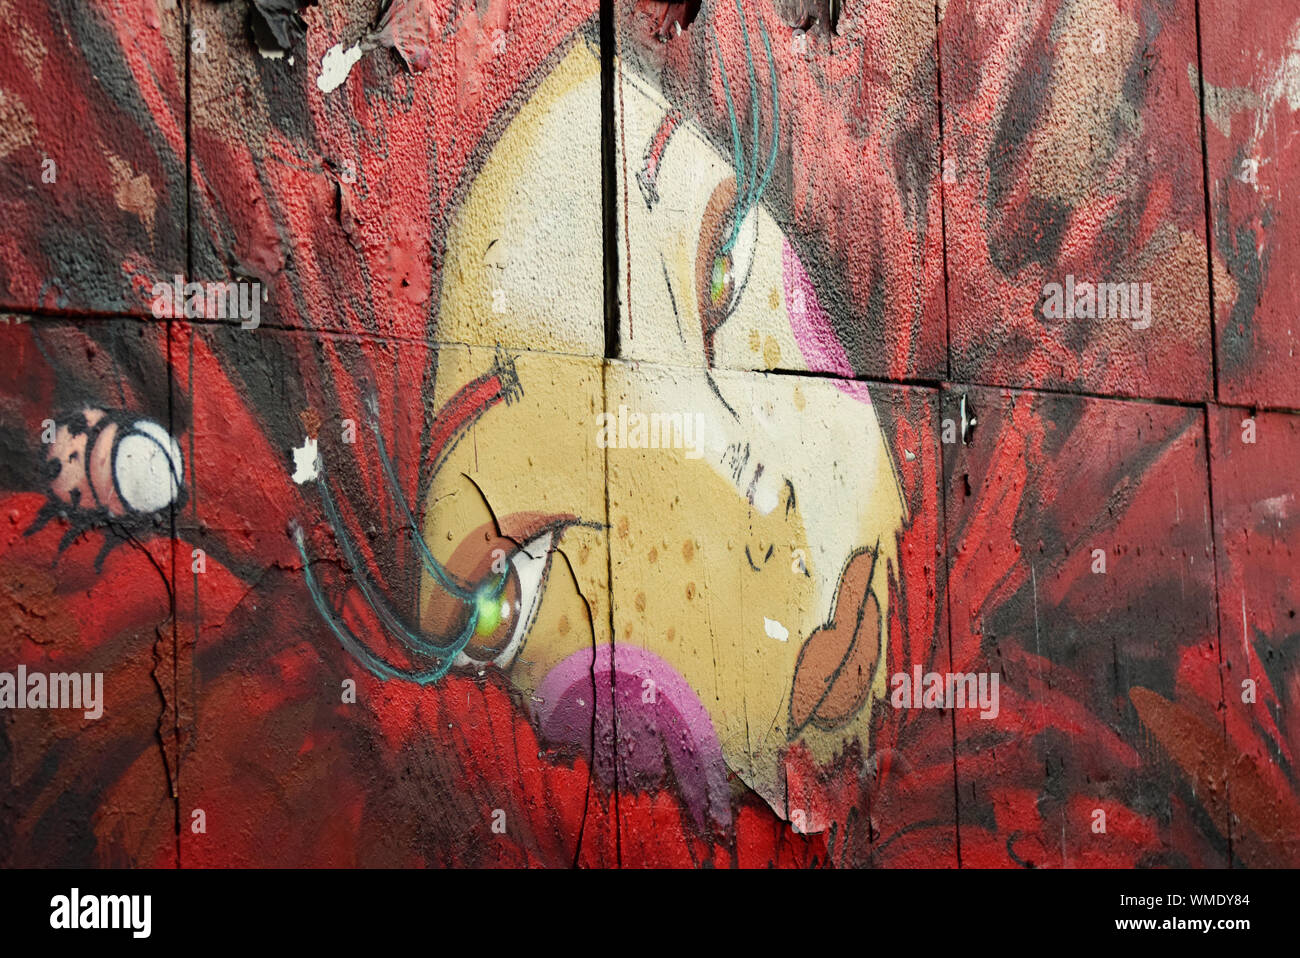 Una fotografia di una porzione di graffiti di Street art di Lisbona raffigurante il volto di una bella donna come il centro di un bellissimo fiore rosso Foto Stock